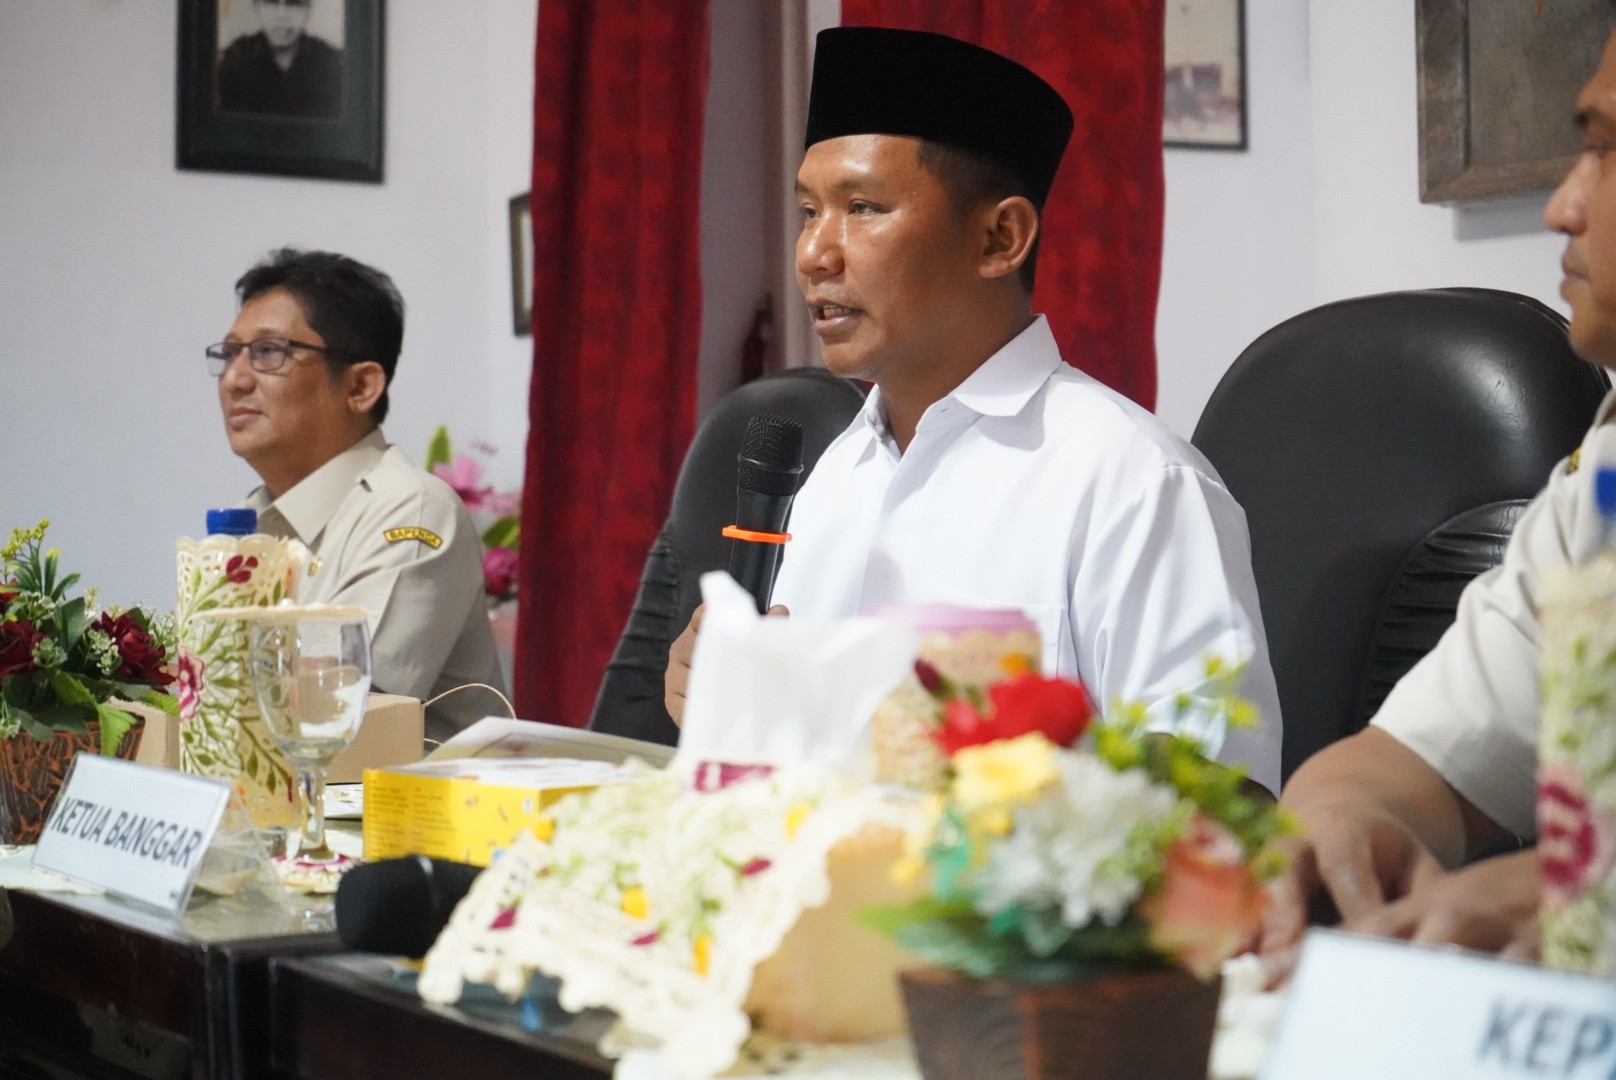 Anggota Badan Anggaran (Banggar) Basuki Babussalam menjaring aspirasi melalui kunjungannya ke UPT Bapenda Provinsi Jawa Timur di Kota Kediri dan DPRD Kota Kediri.